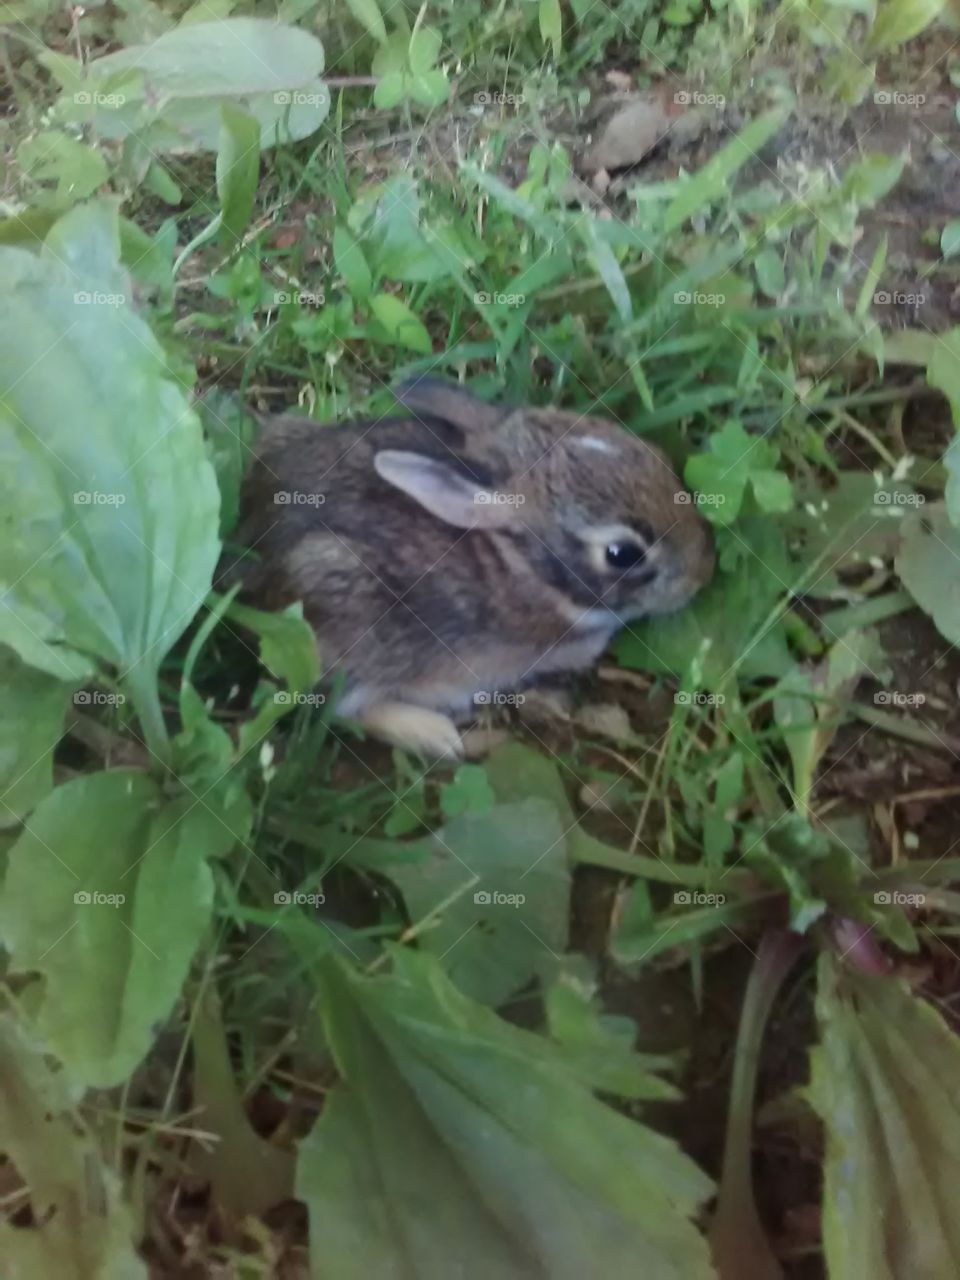 bunny
tiny rabbit